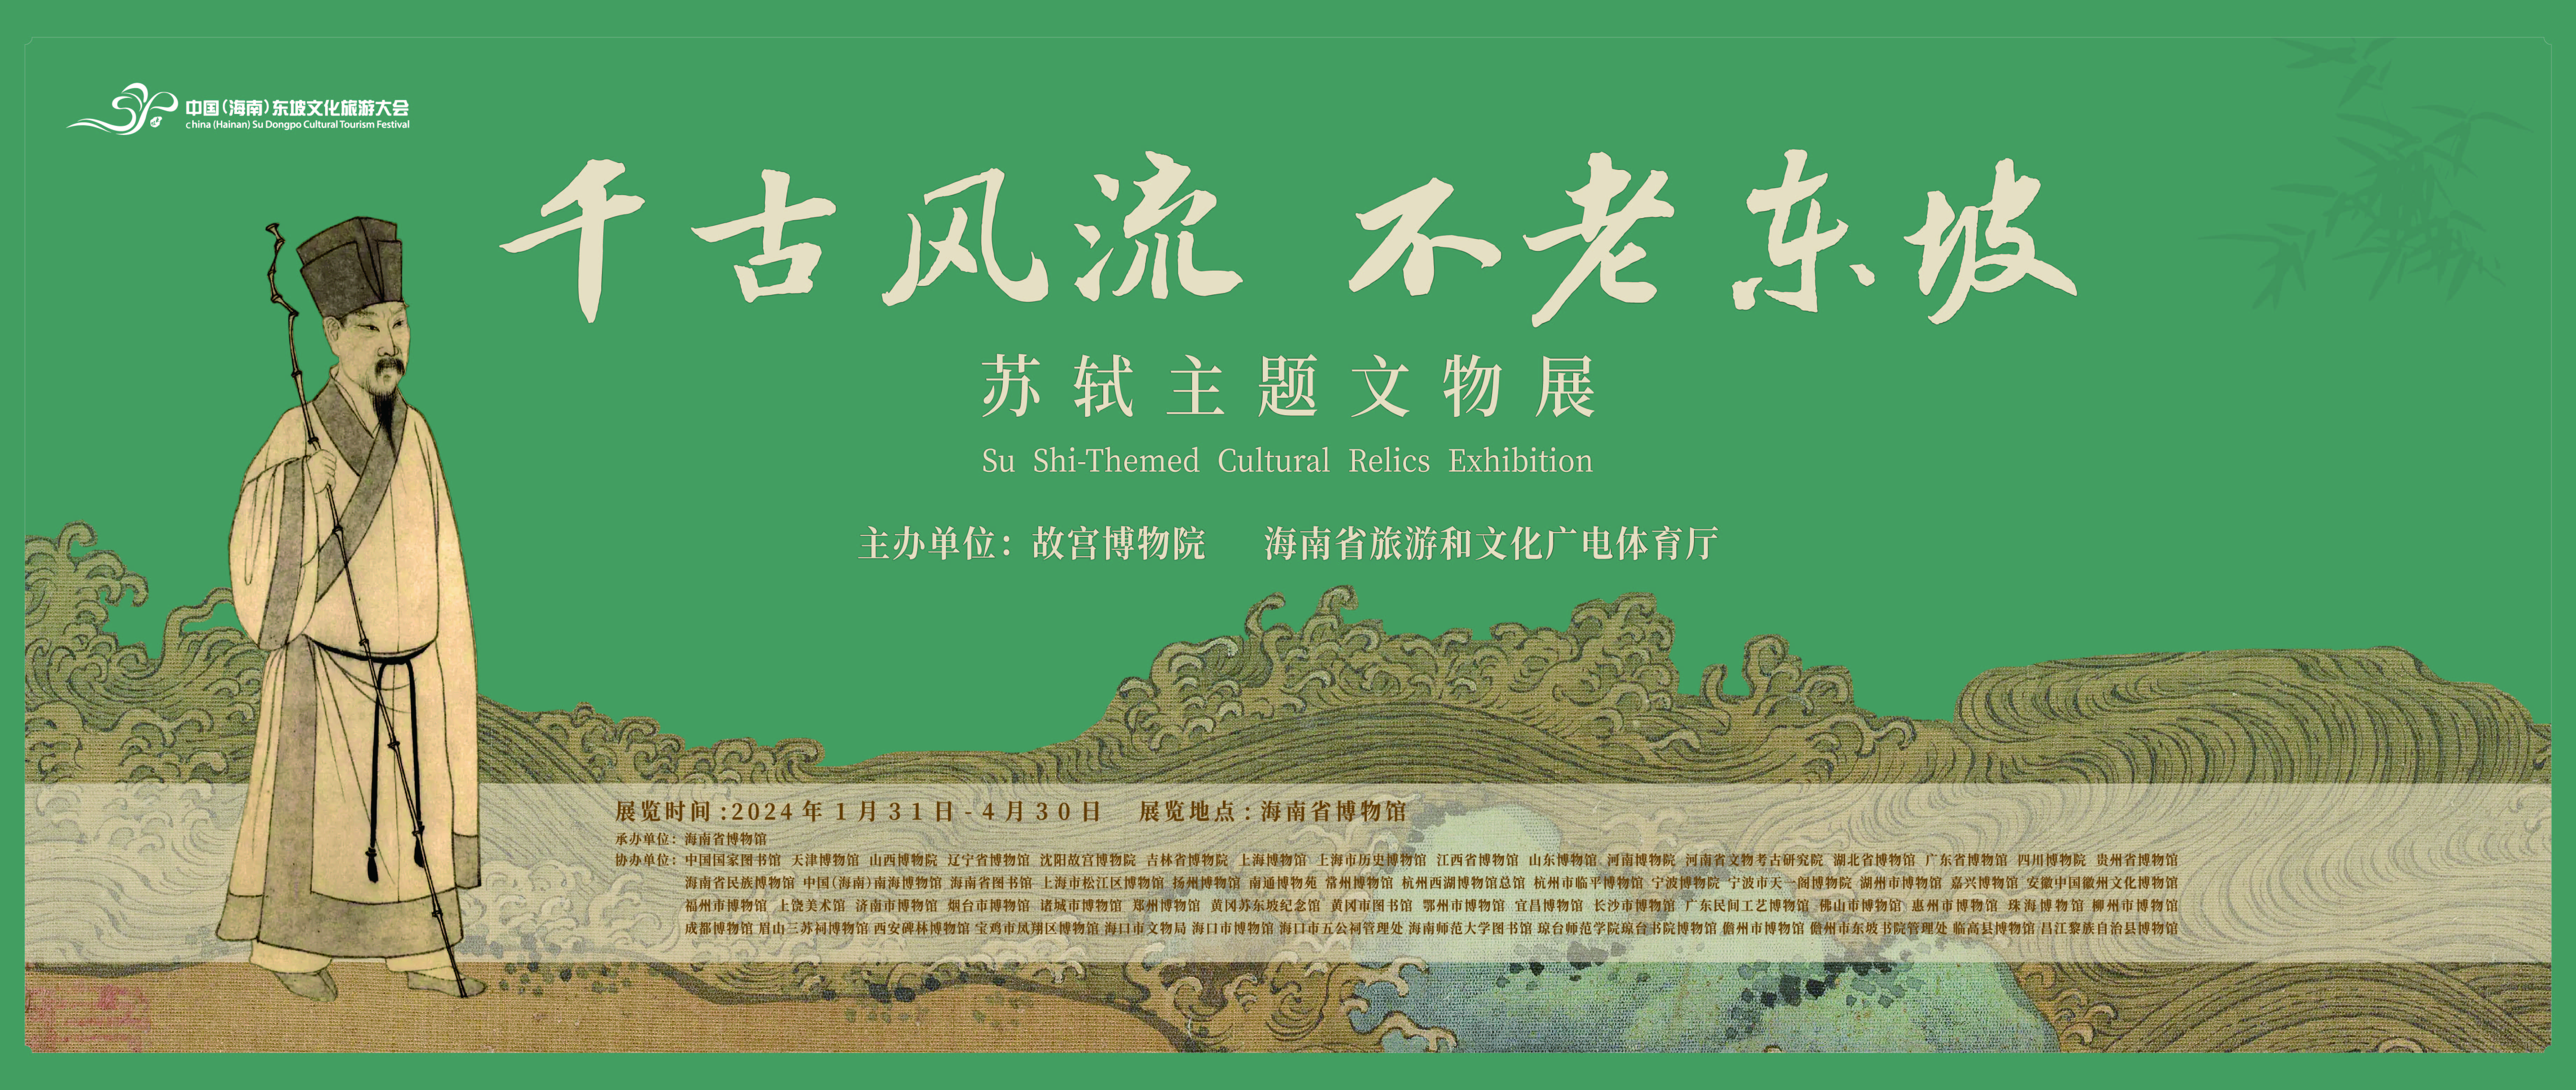 海南2024年开春文化旅游大餐：苏轼主题文物展1月31日在海南省博物馆展出